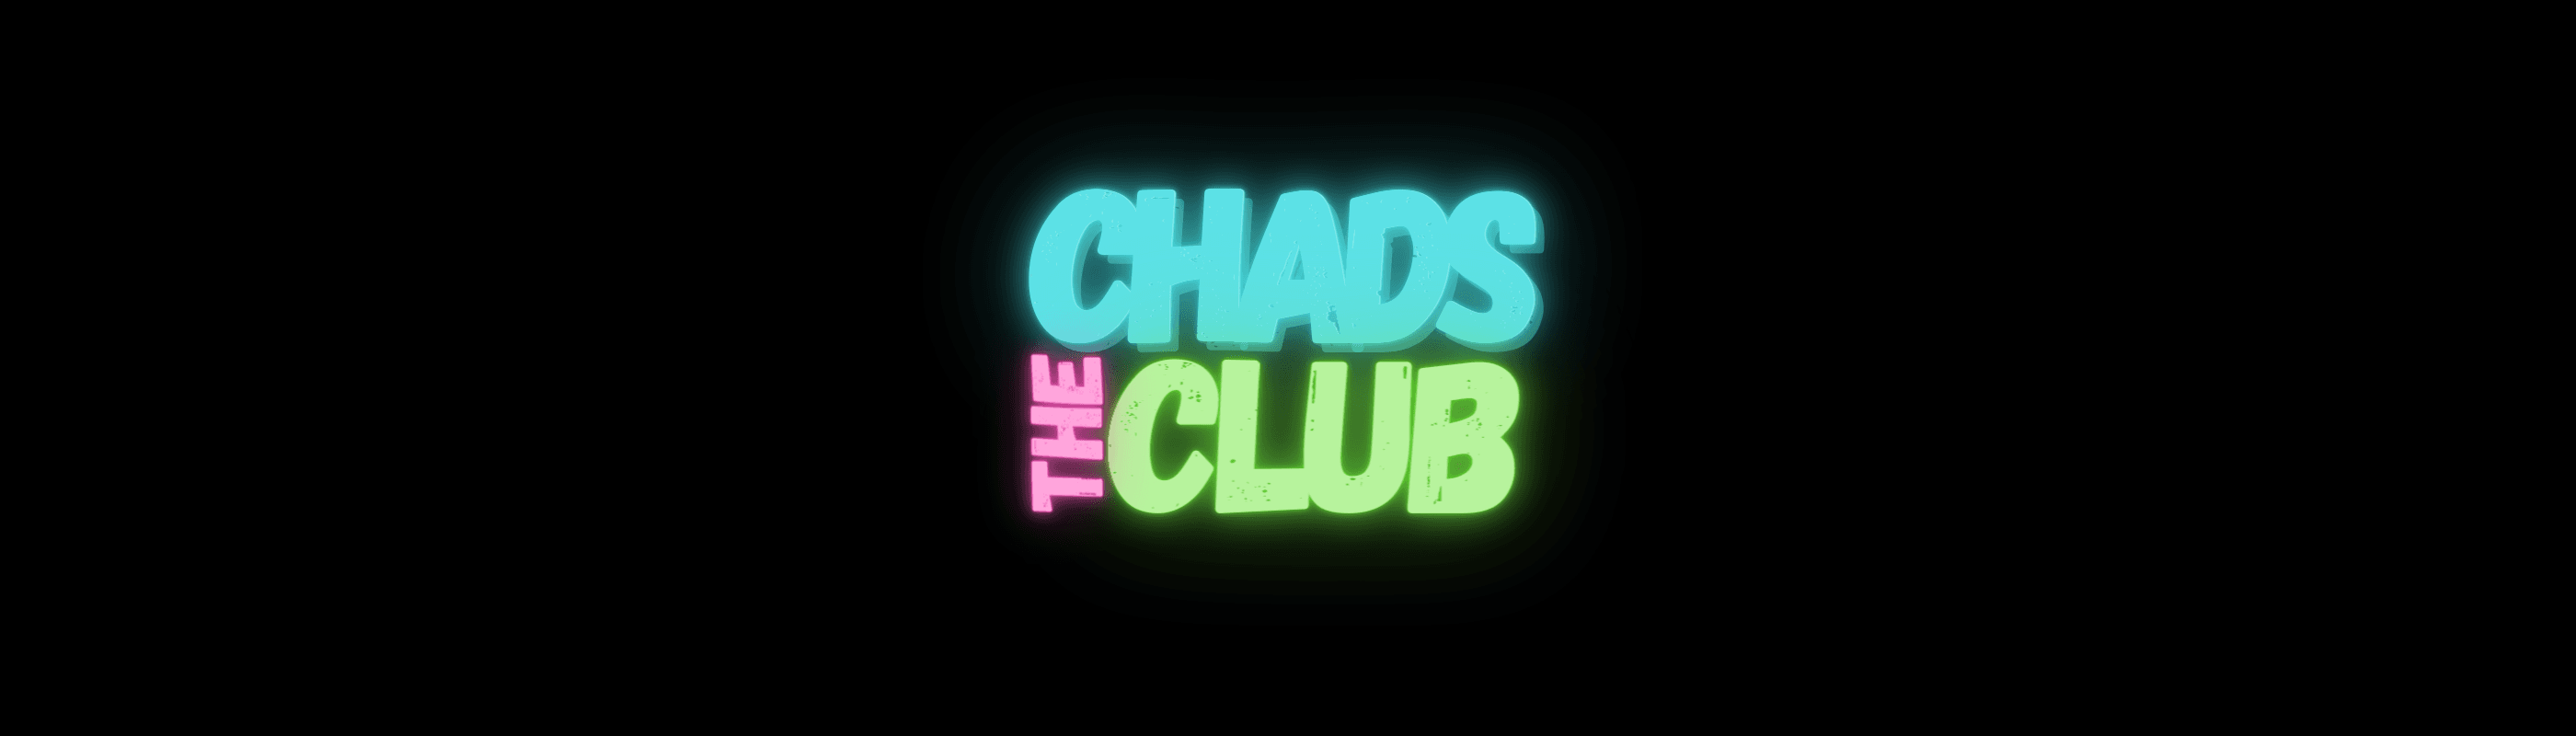 TheChadsClub 横幅